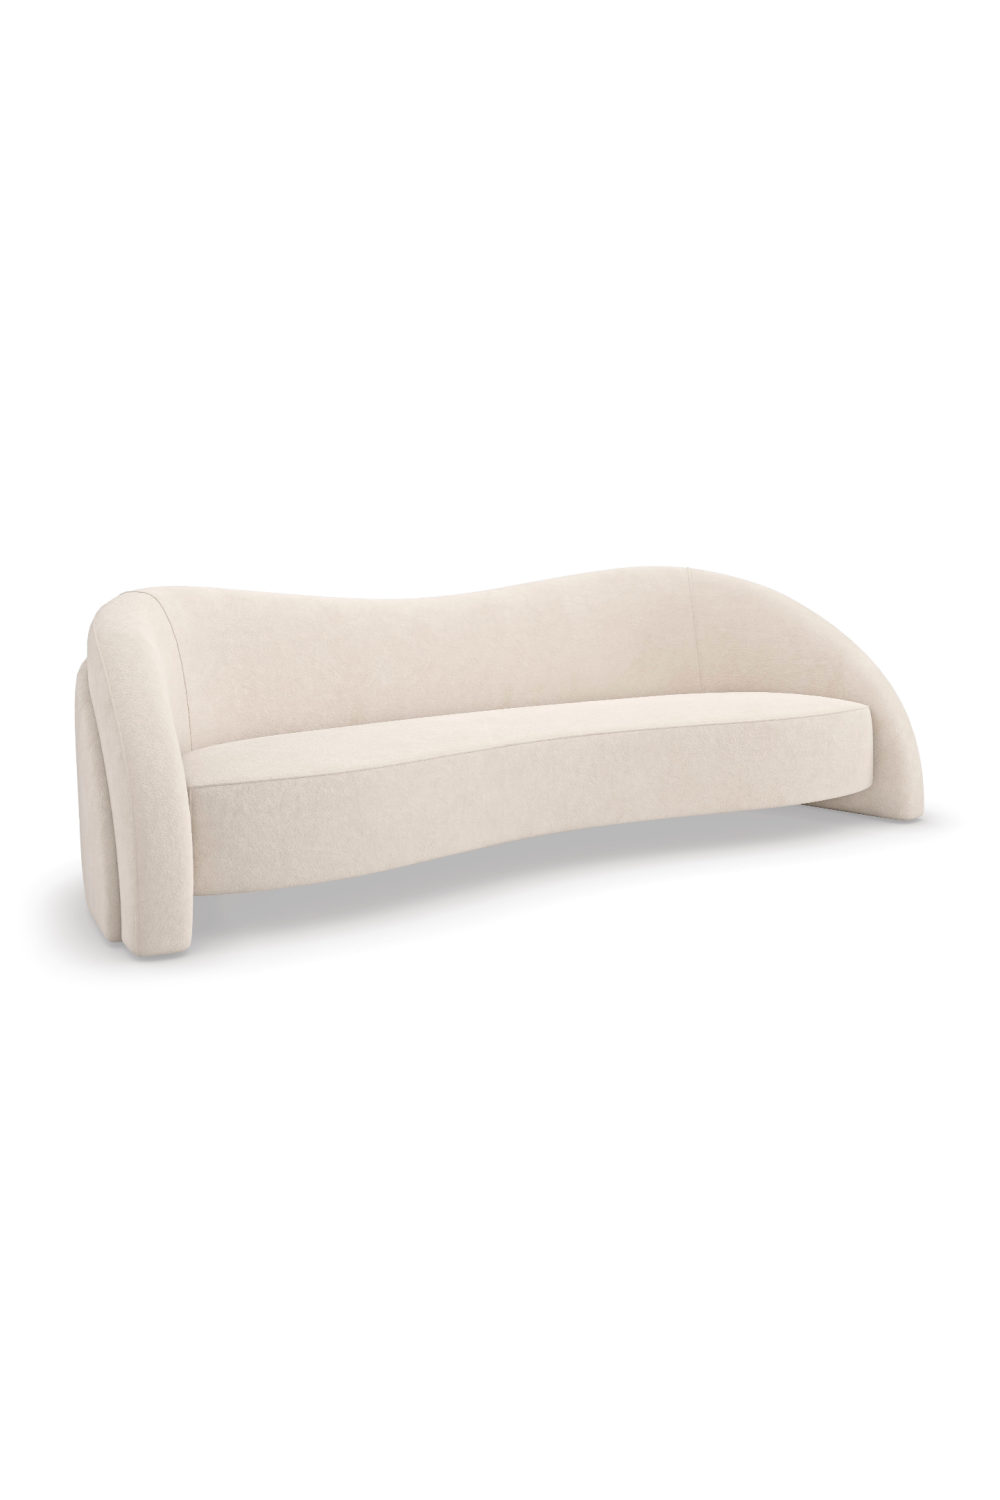 White Free-Form Sofa | Caracole Movement | Oroa.com